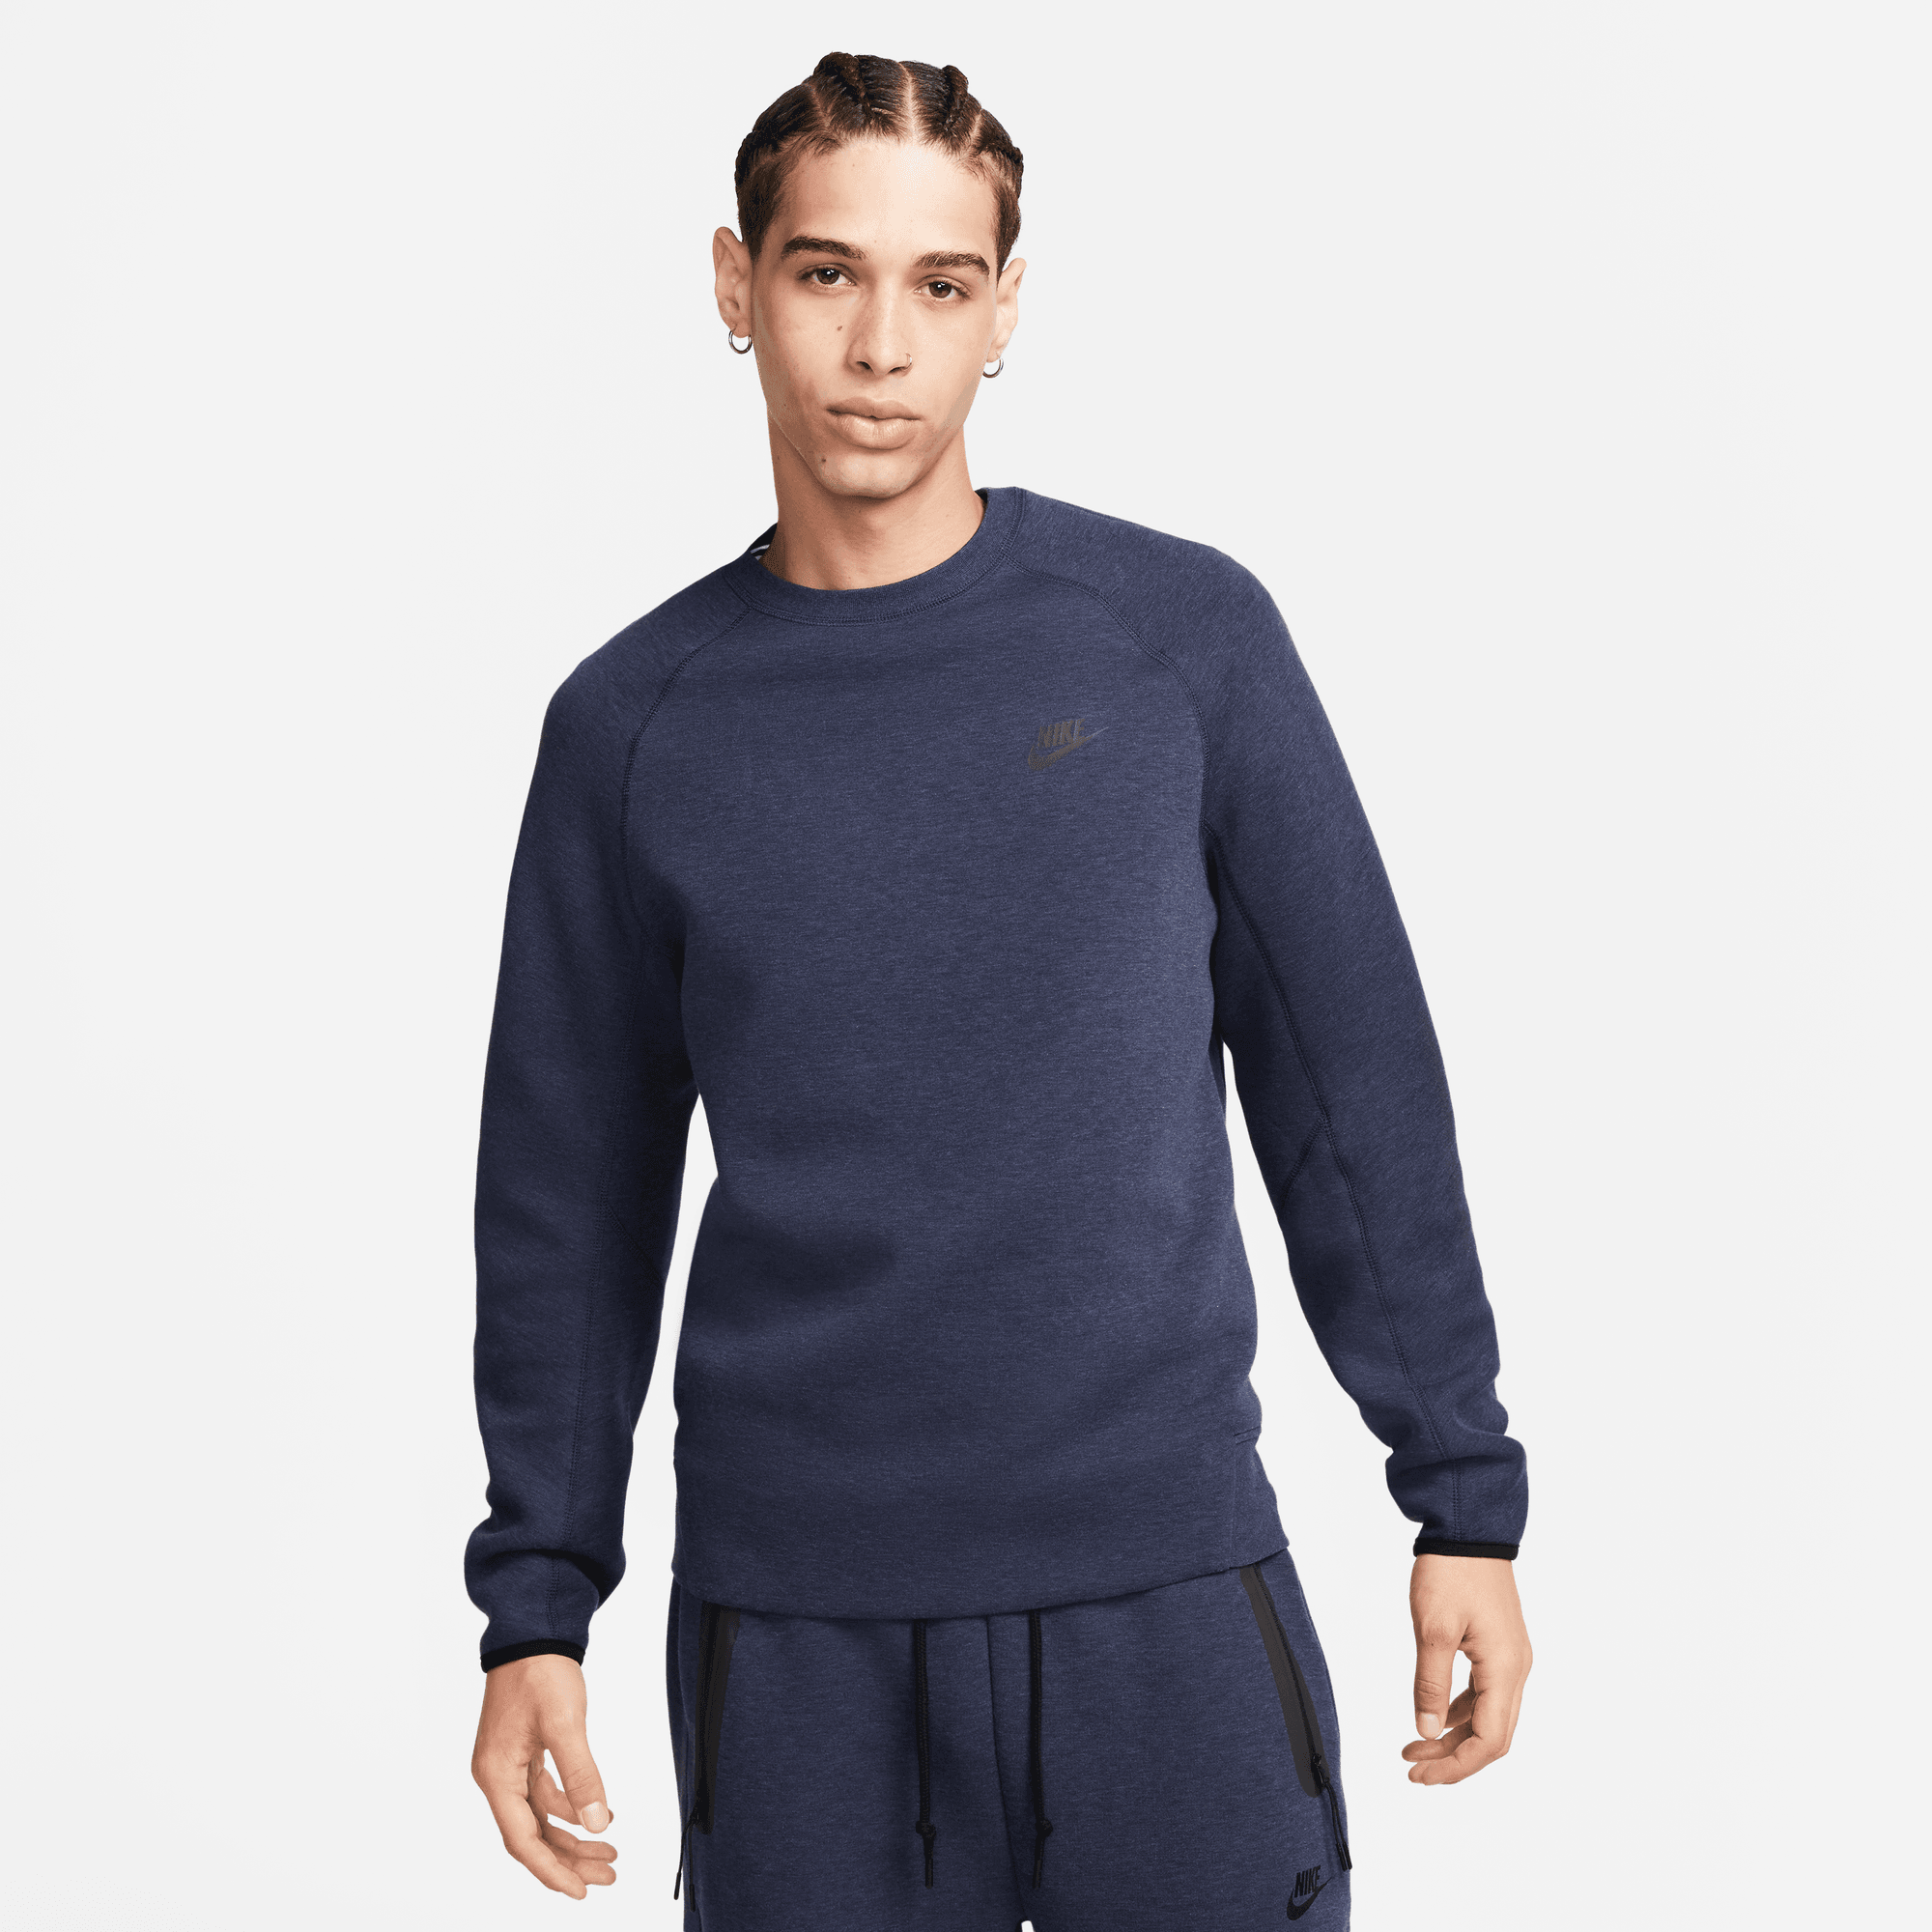 Nike Sportswear Tech Fleece Blue Crewneck Sweatshirt